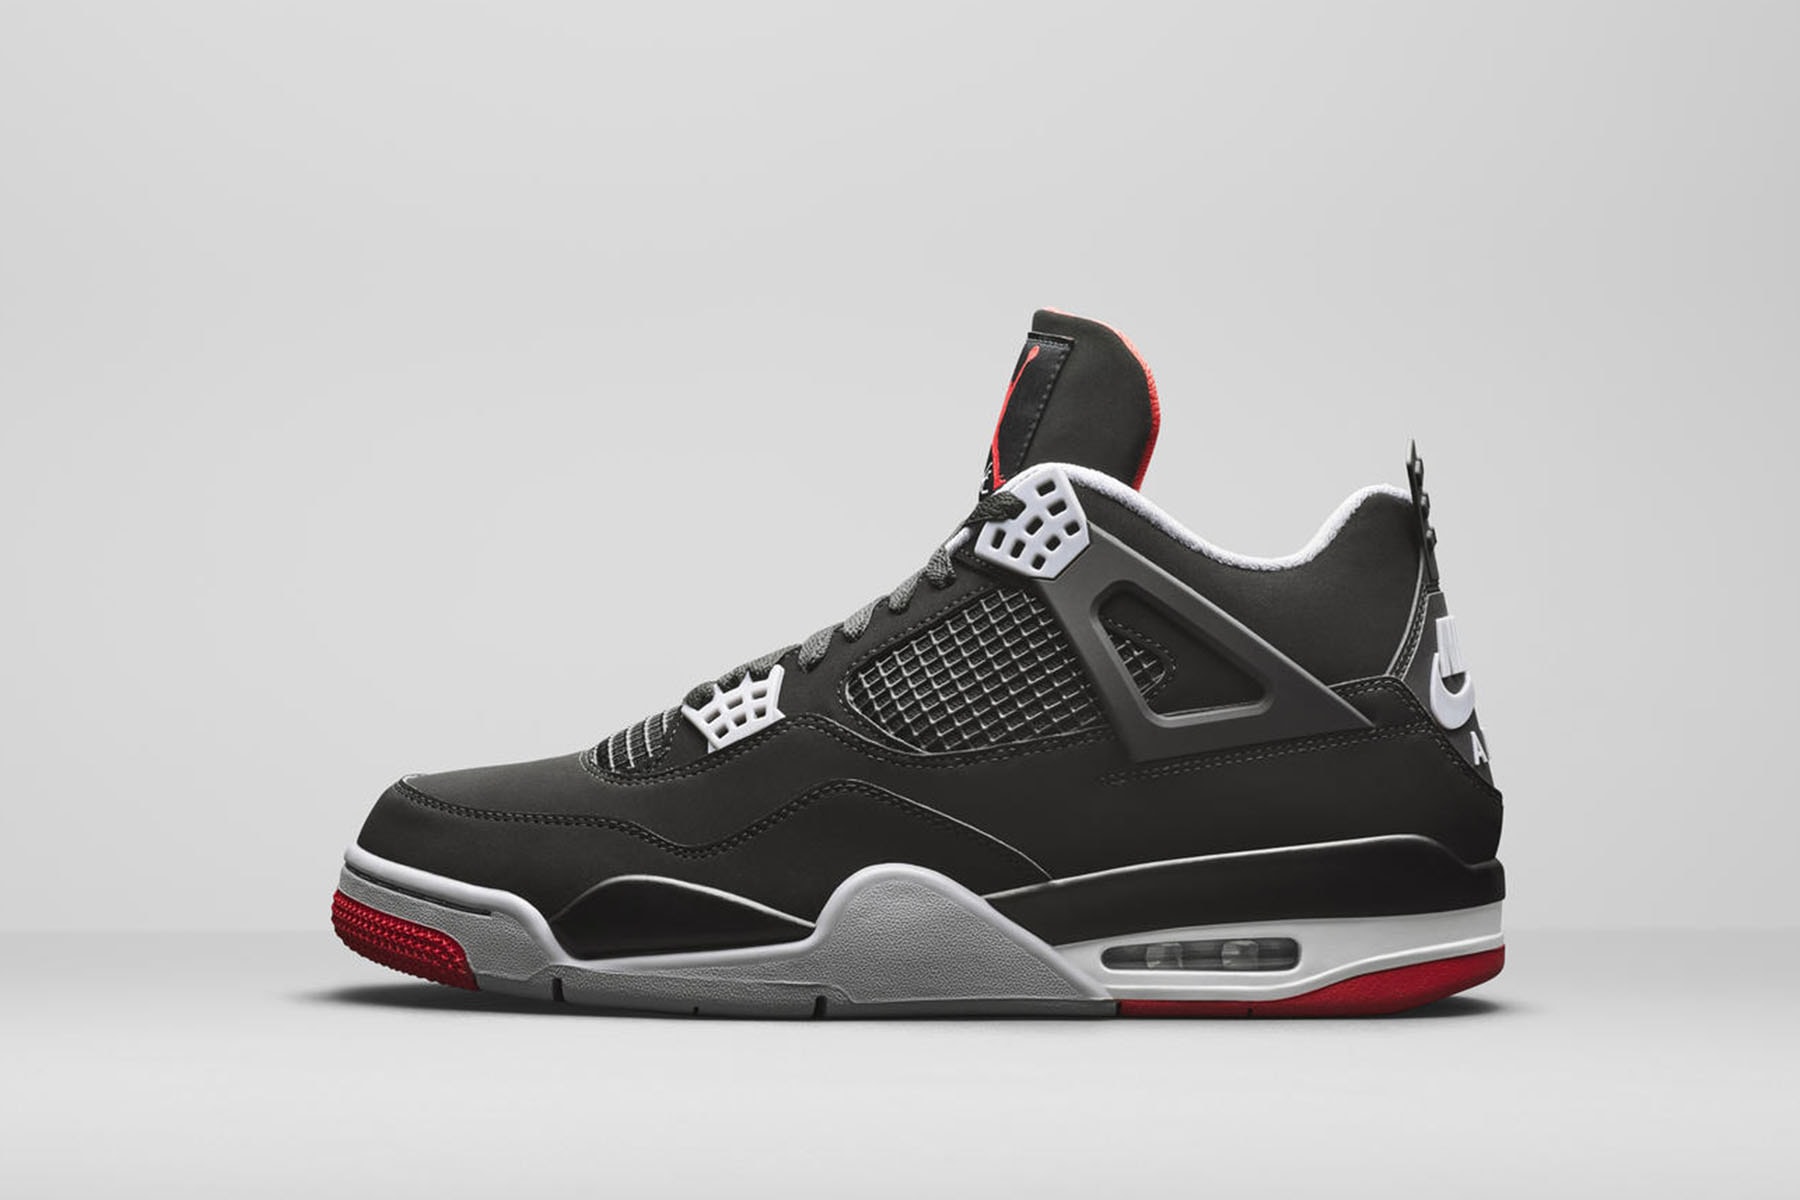 ナイキ Nike エアジョーダン 4 マイケル・ジョーダン Air Jordan 4 ブレッド Bred 2019 Retro First Look Jordan Brand Michael Jordan